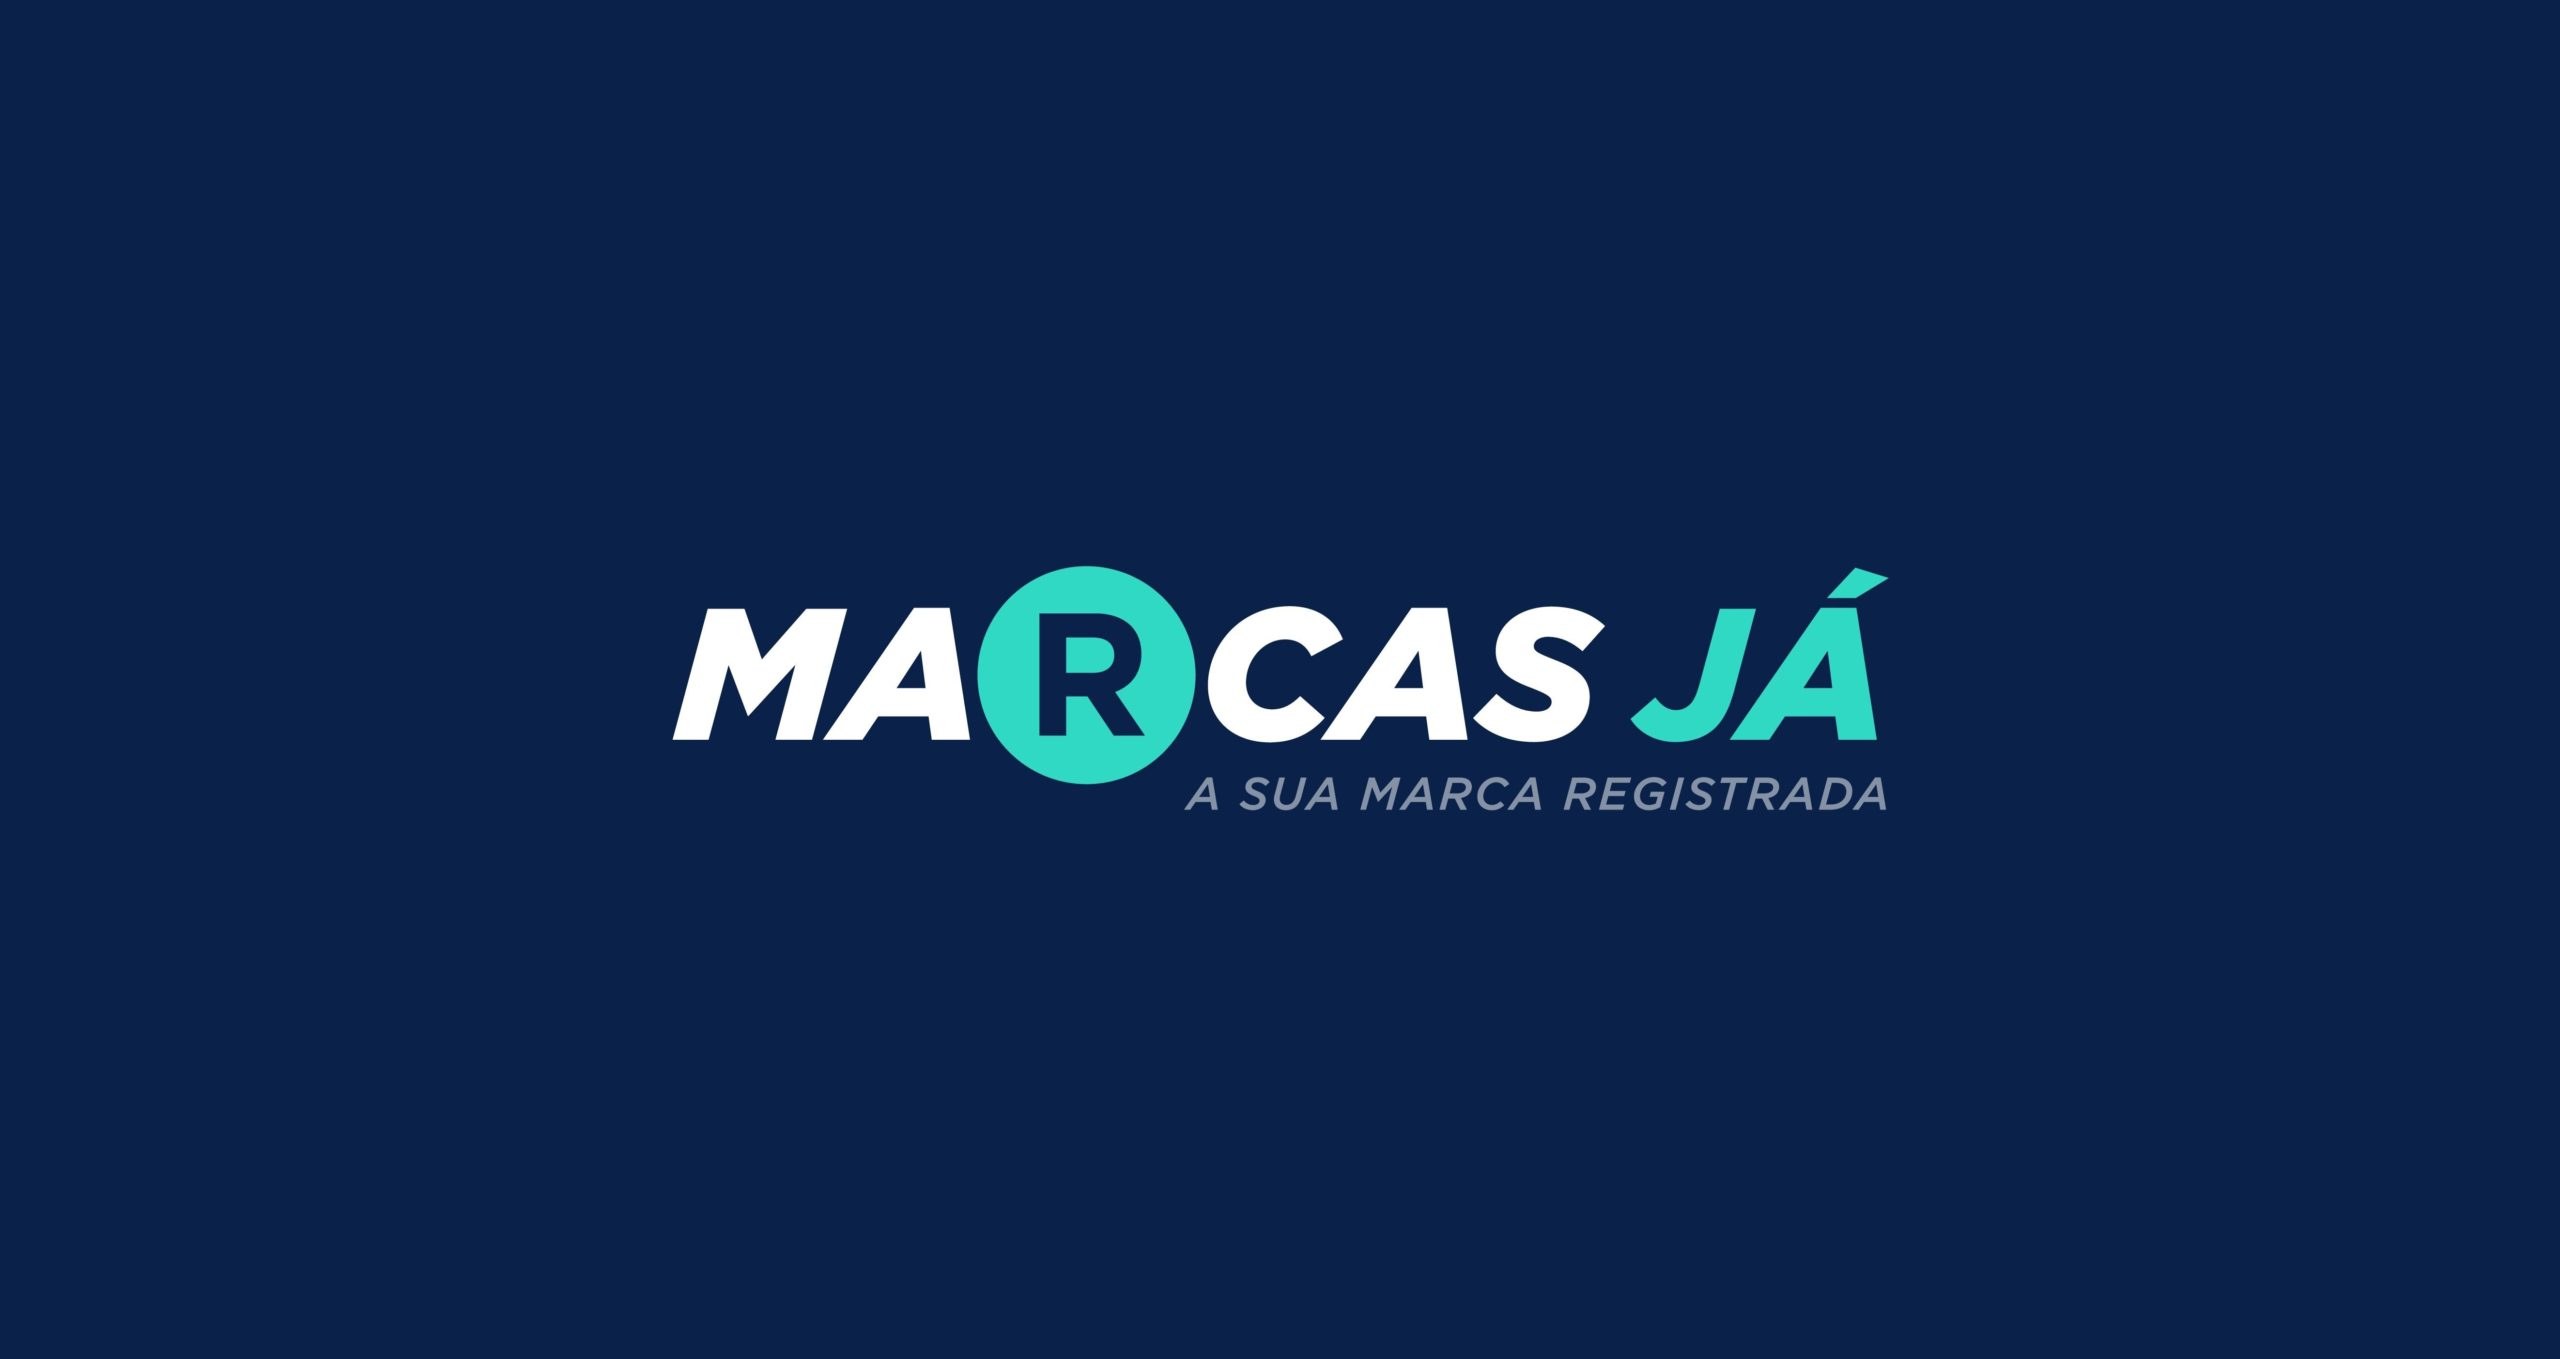 REGISTRO DE MARCA EM CURITIBA/ PR